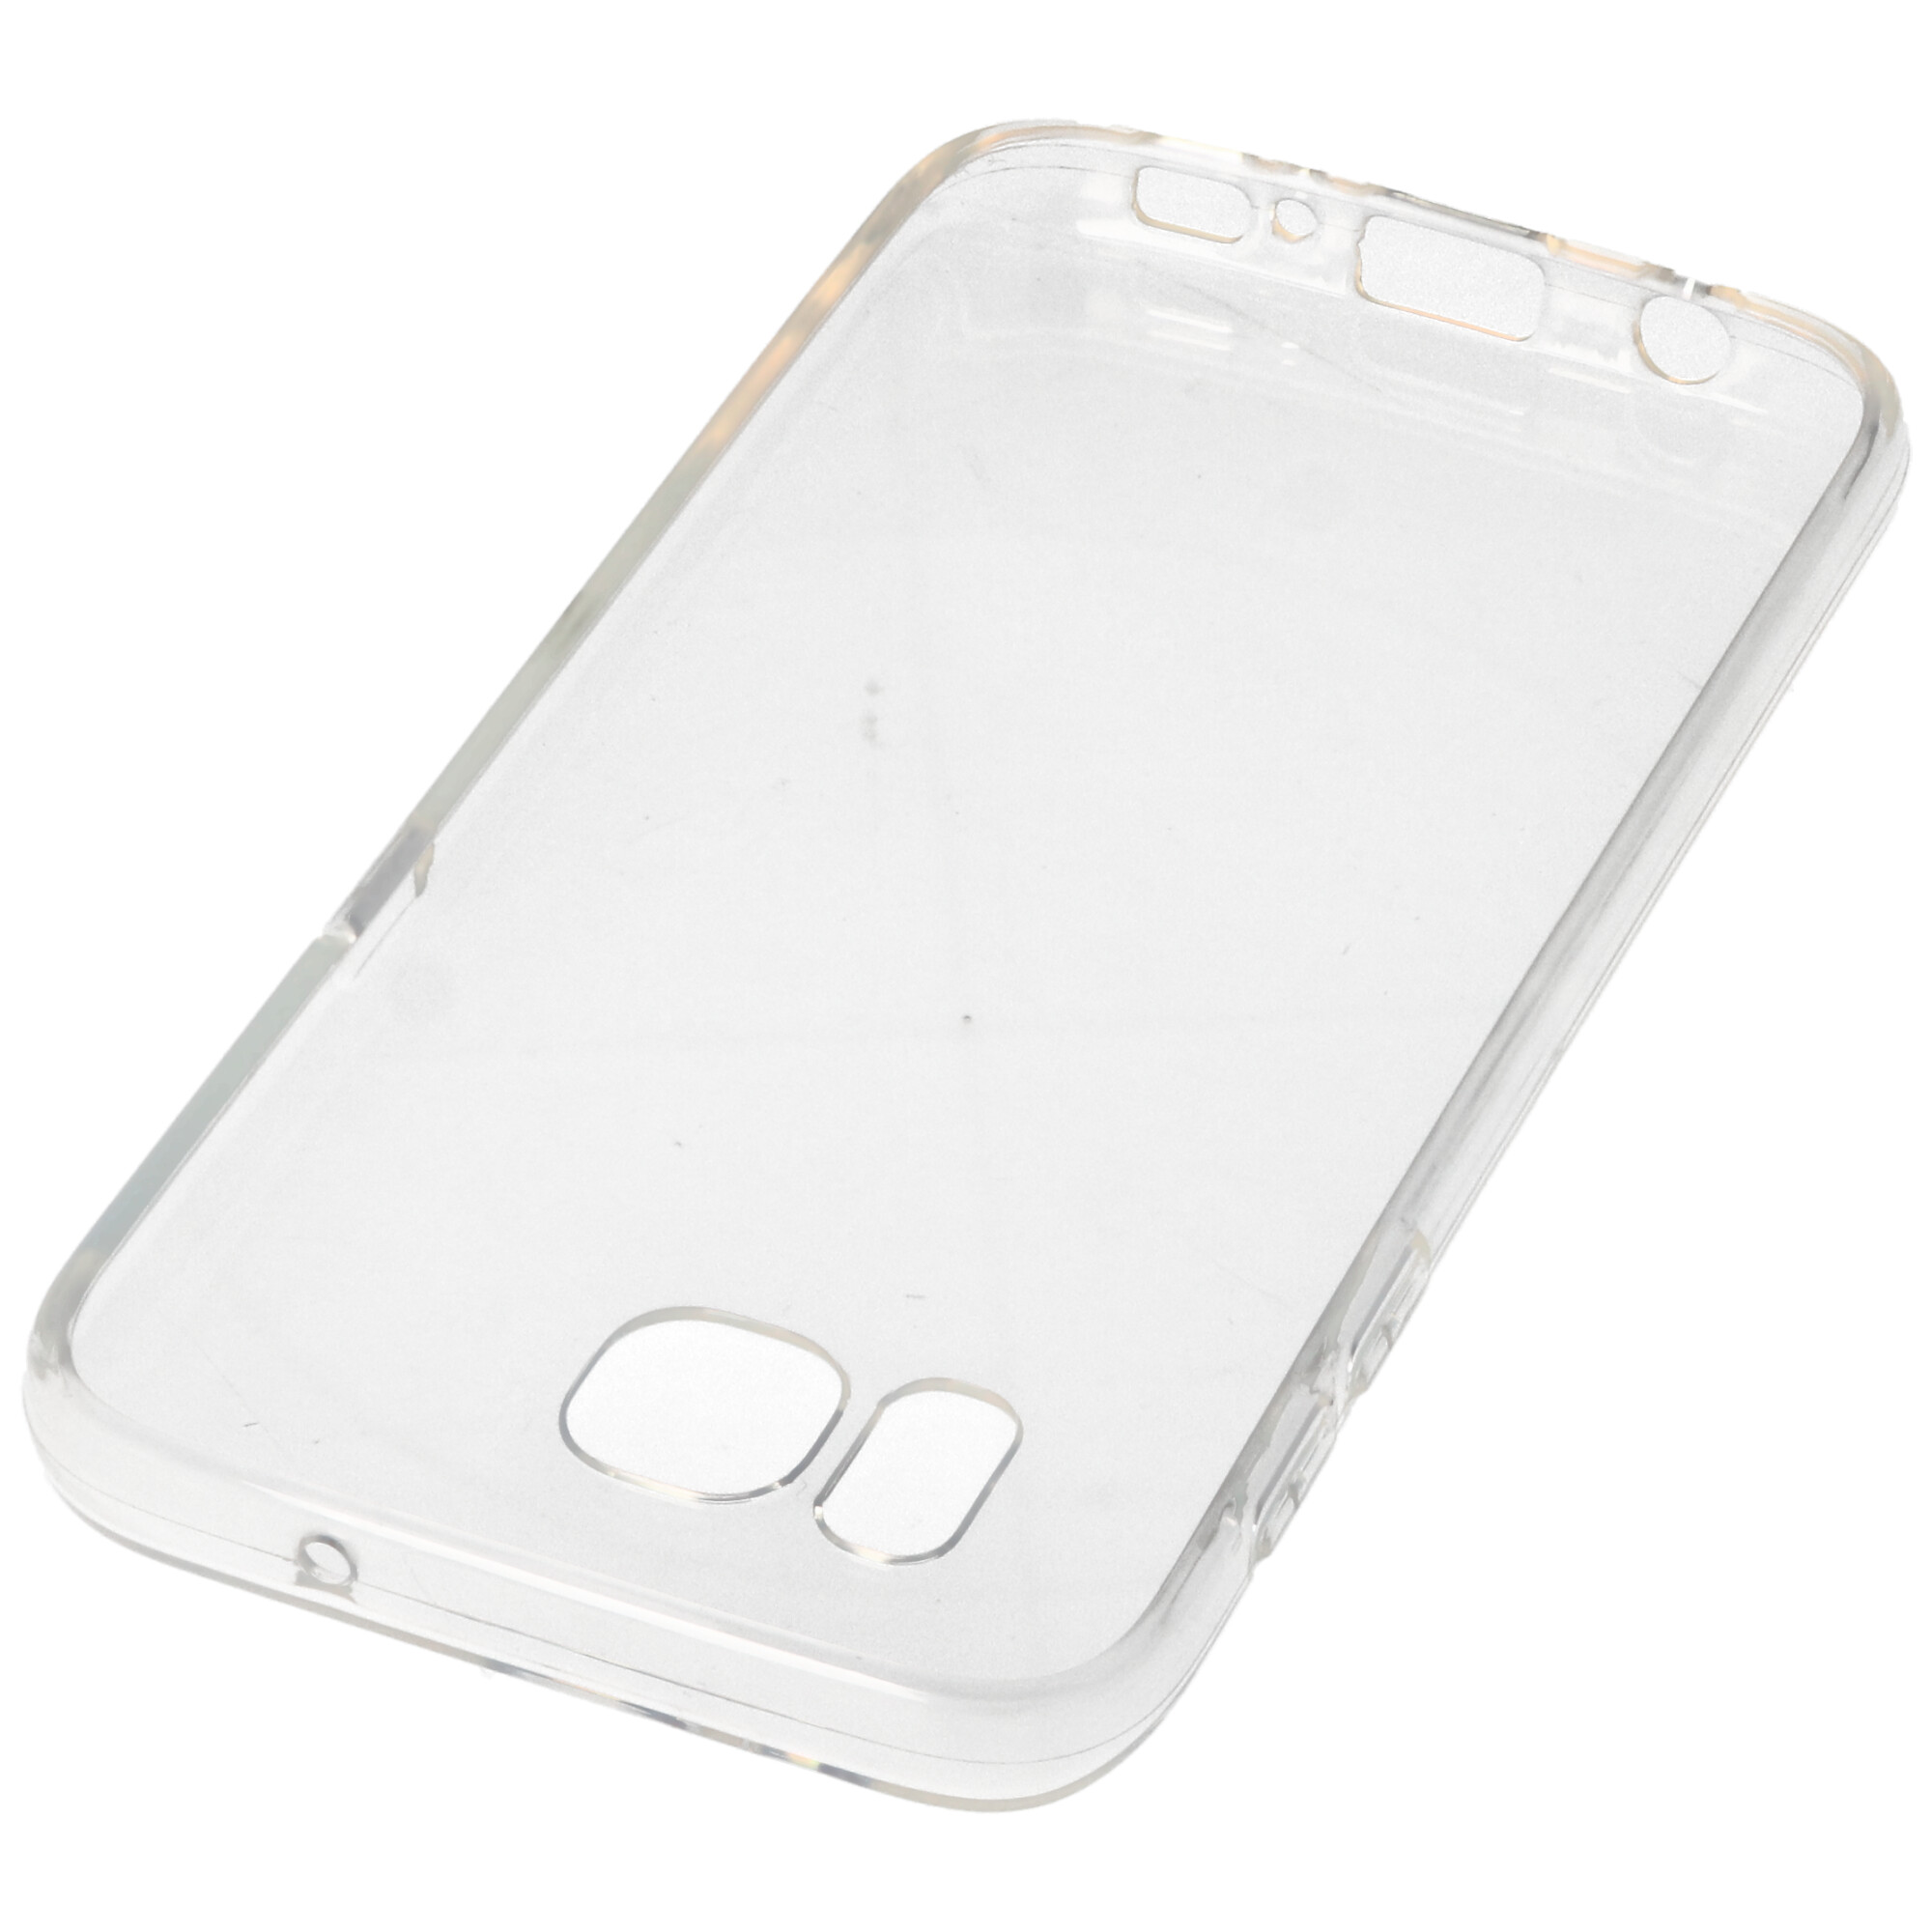 Hülle passend für Samsung Galaxy S6 Edge / S7 - transparente Schutzhülle, Anti-Gelb Luftkissen Fallschutz Silikon Handyhülle robustes TPU Case